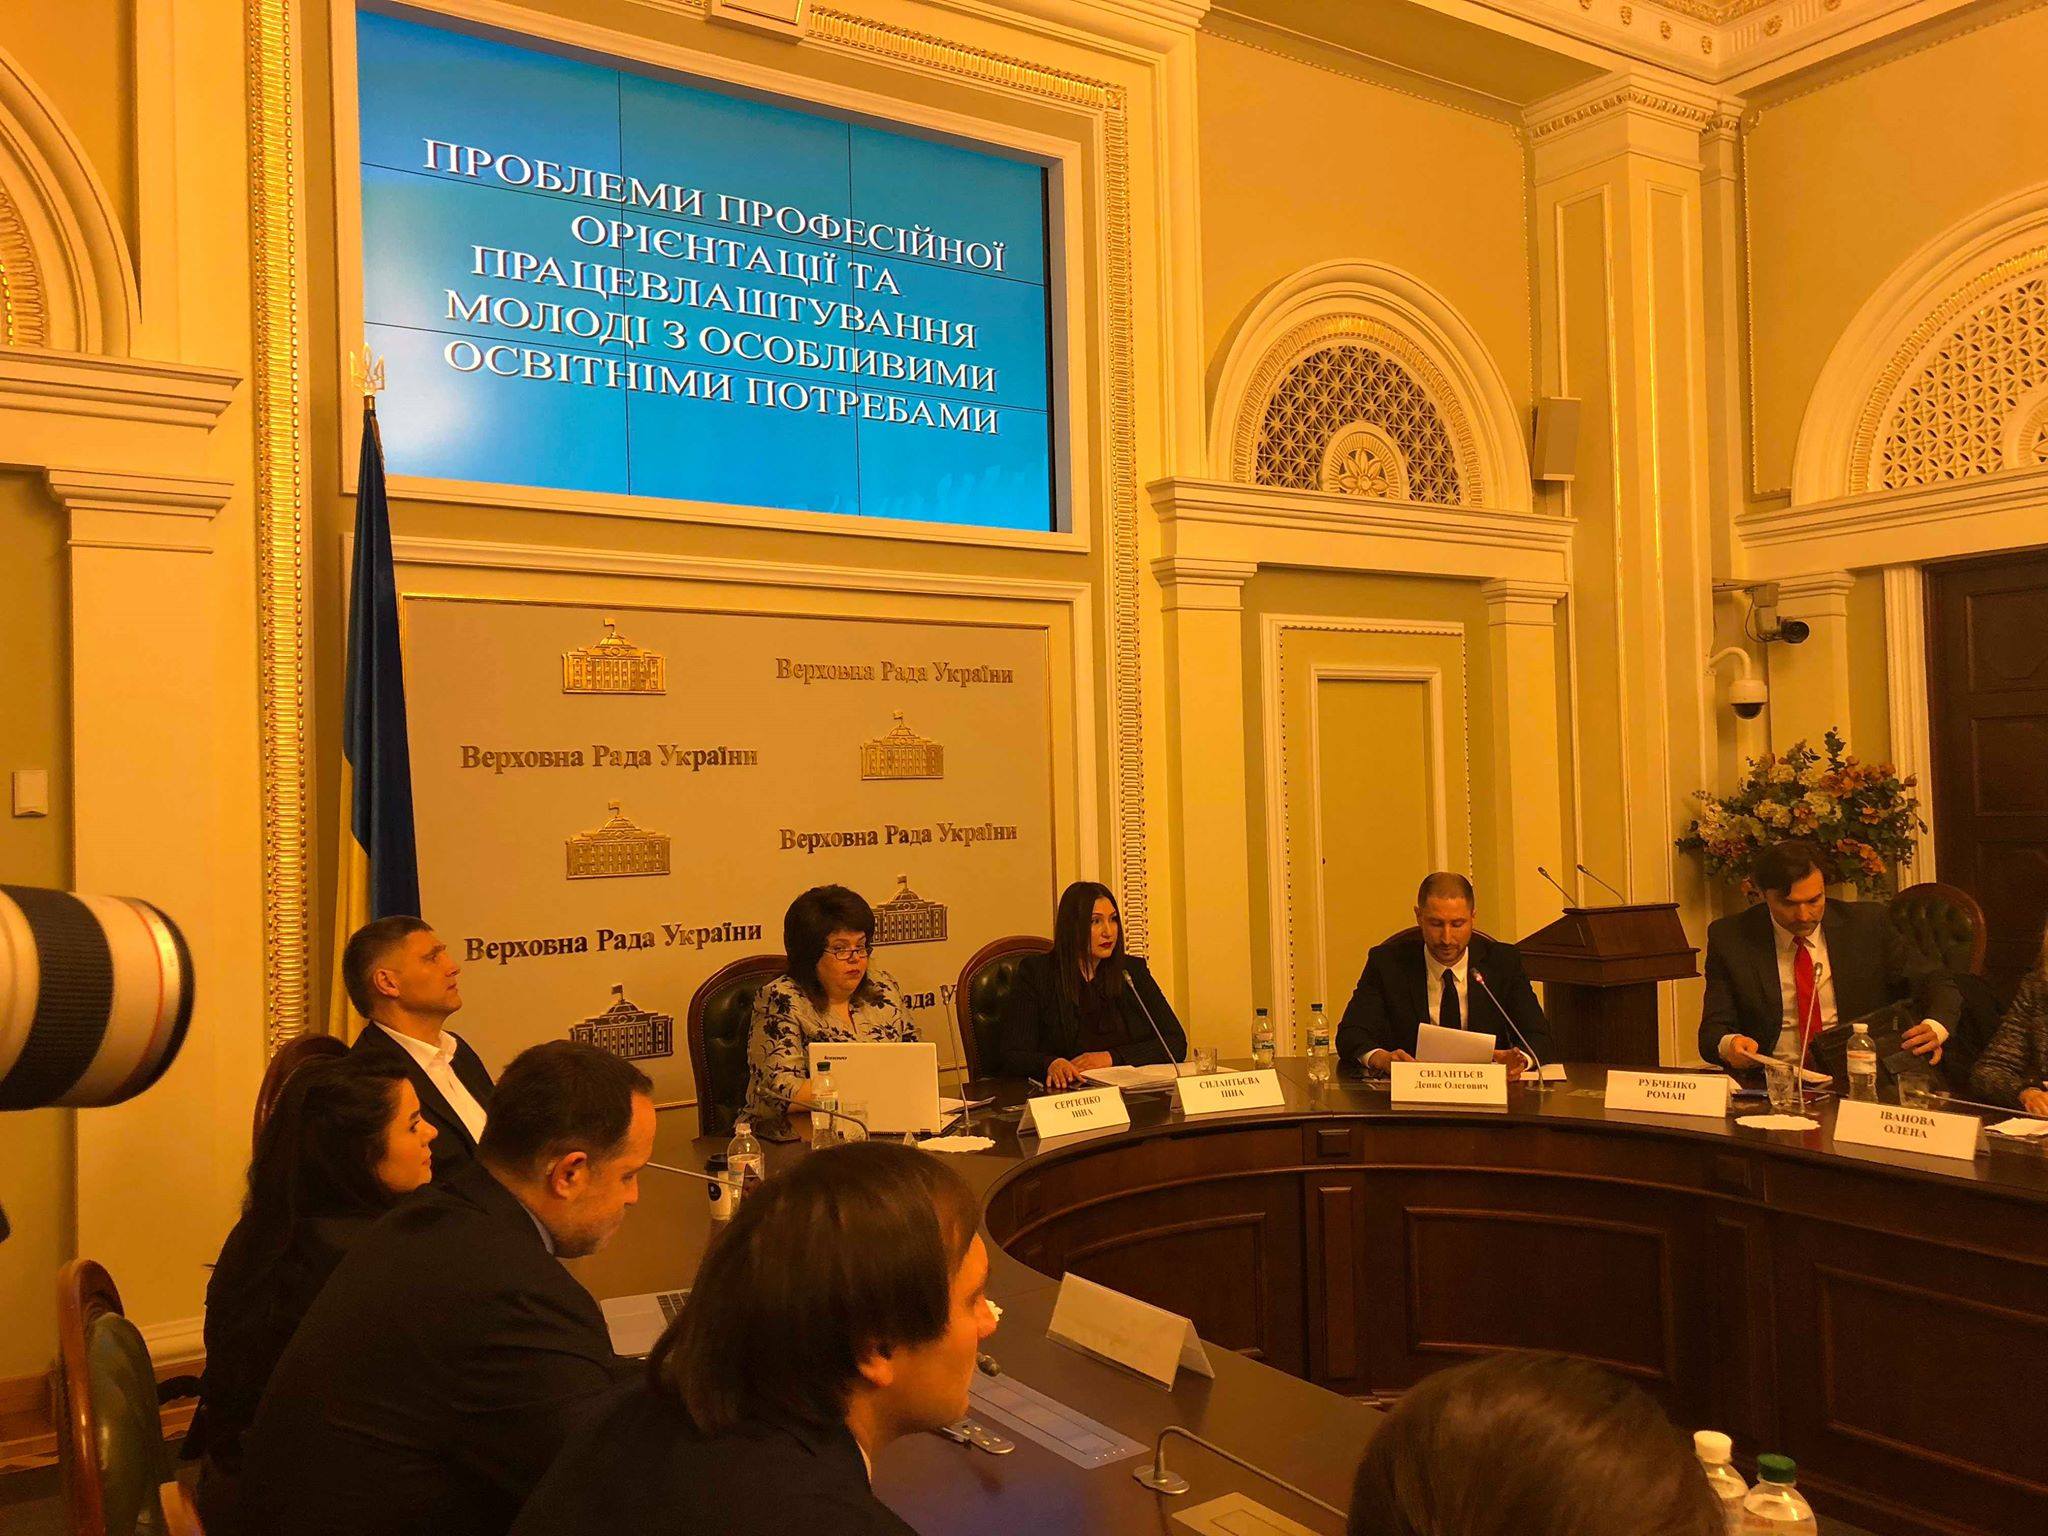 ВР України, круглий стіл «Проблеми професійної орієнтації та працевлаштування молоді з особливими потребами»